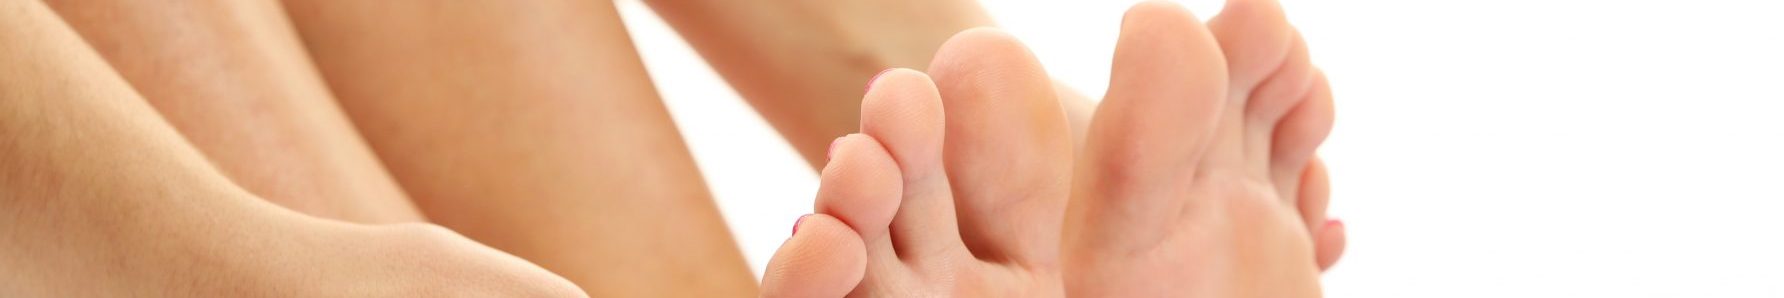 Ból stopy – zacznijmy szanować swoje stopy